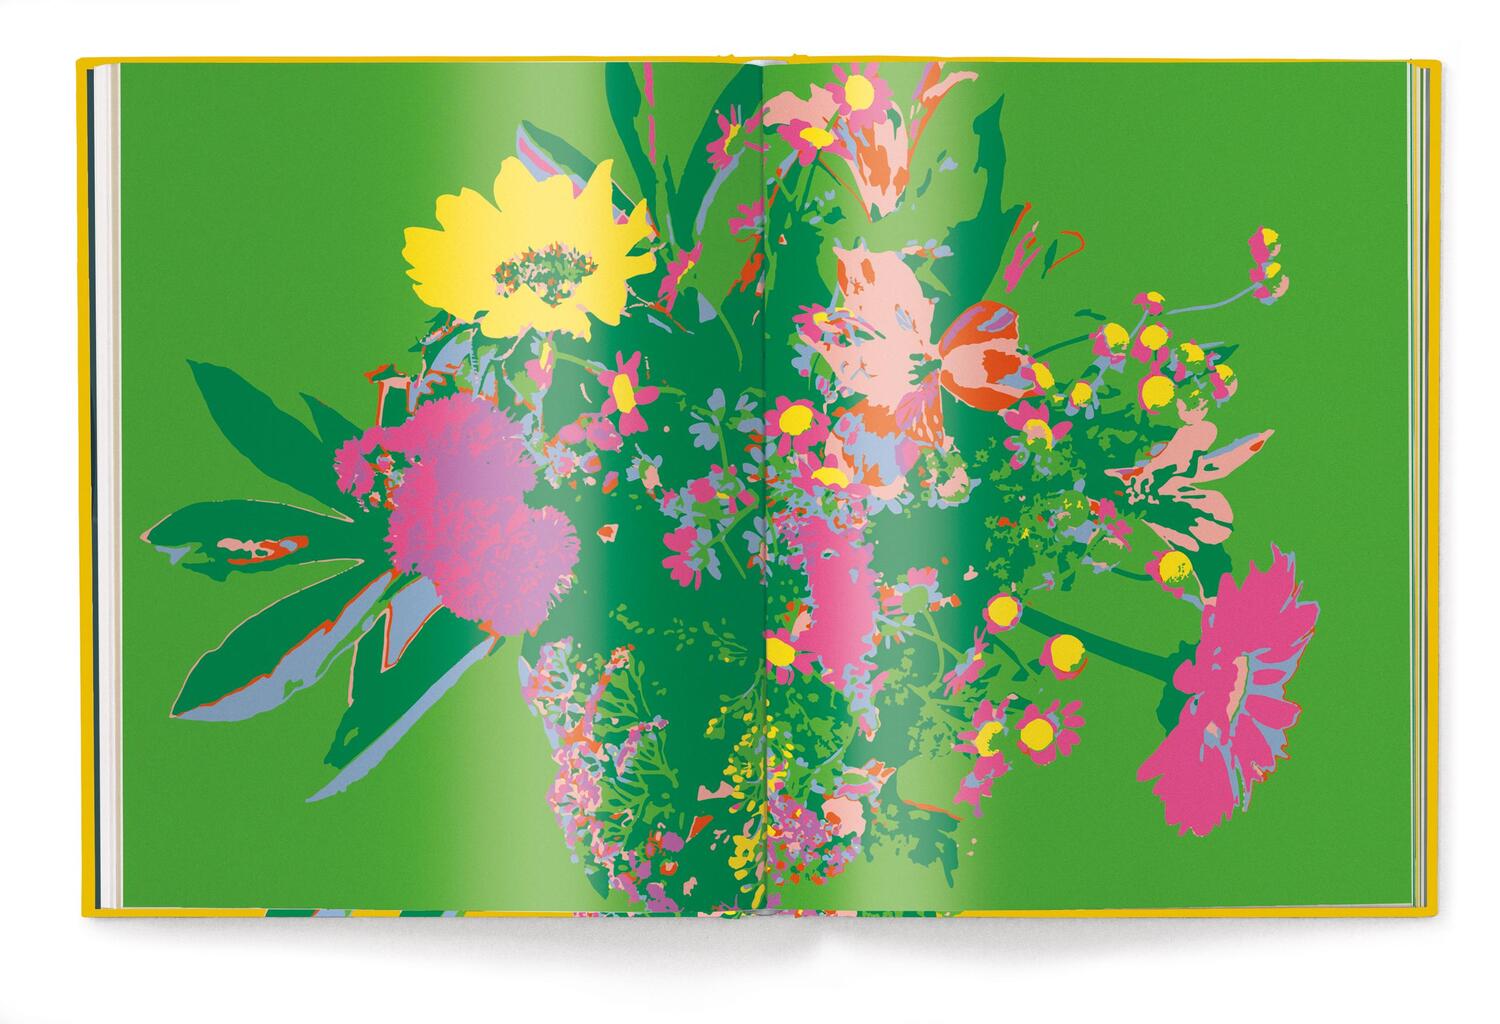 Bild: 9783961715404 | Floramour: Wildblumen | Anja Klaffenbach | Buch | 208 S. | Deutsch